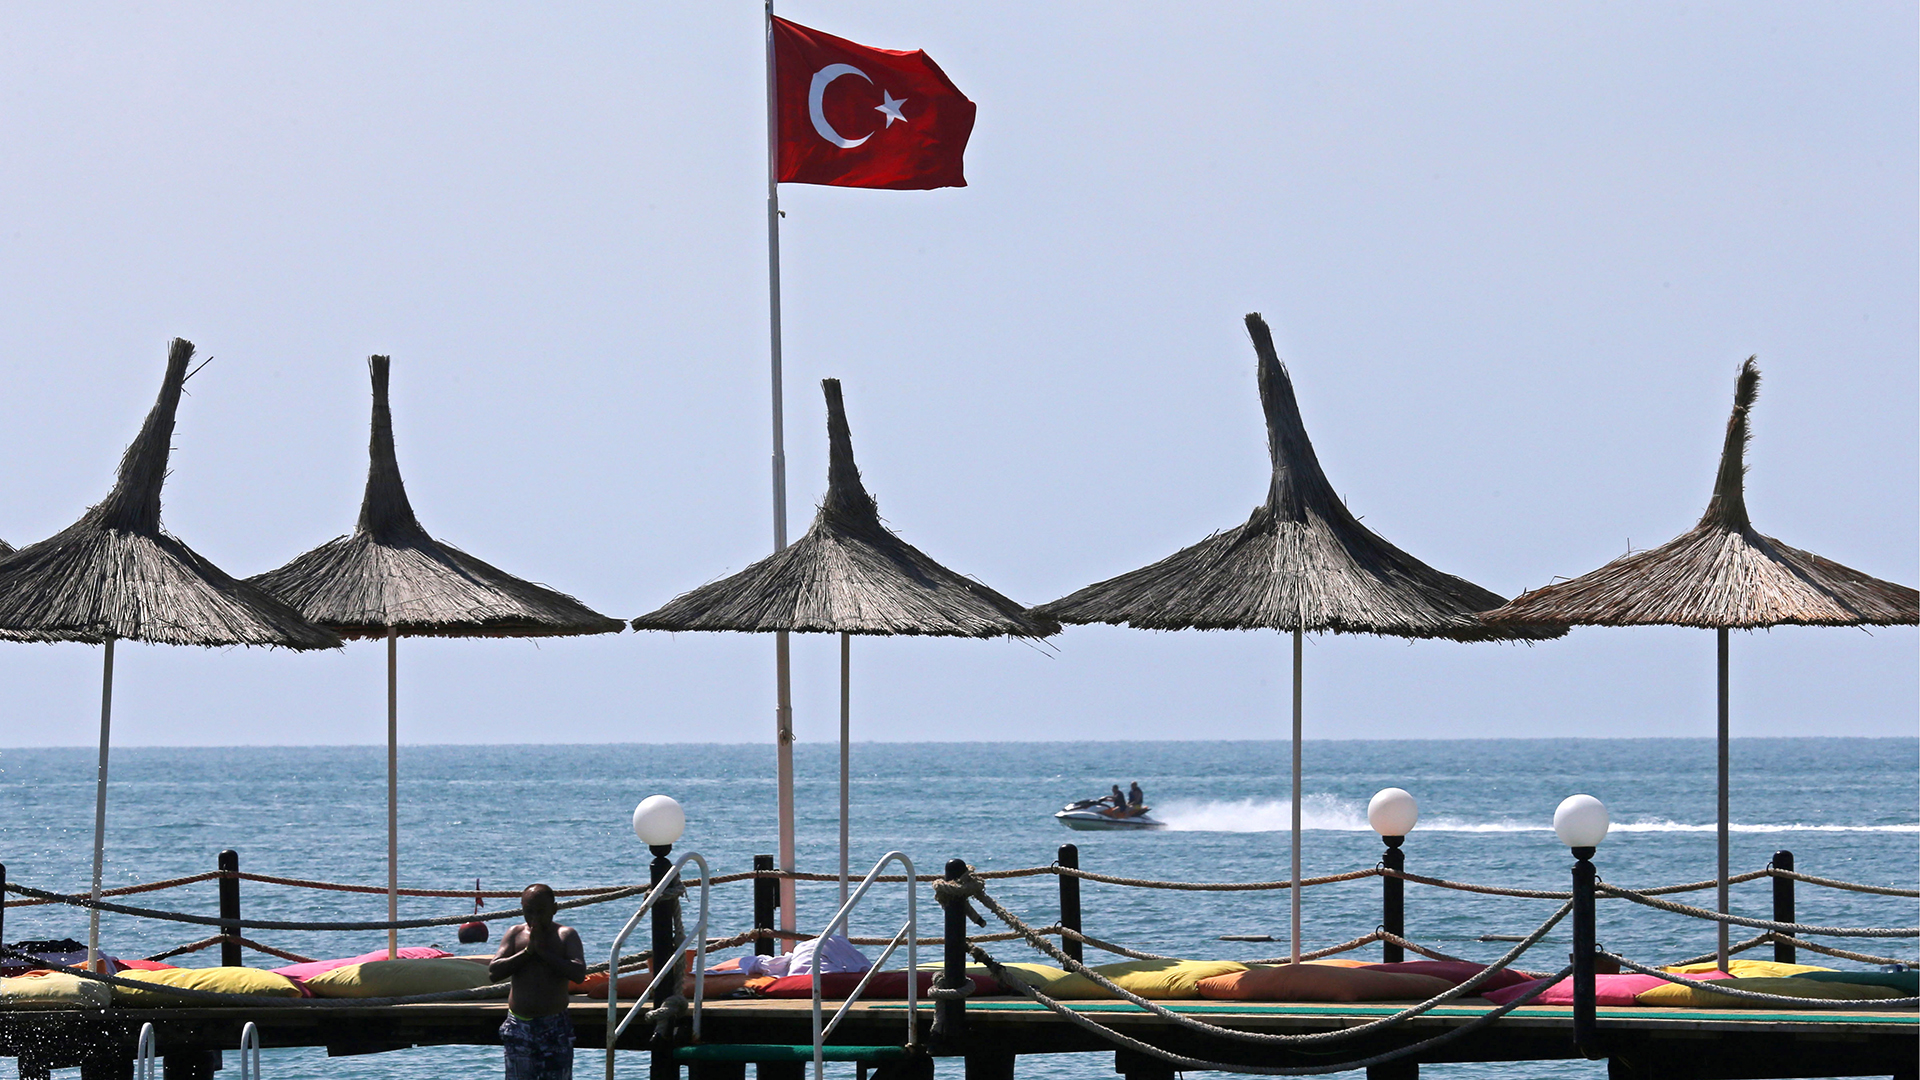 Strand von Antalya in der Türkei | picture alliance / dpa